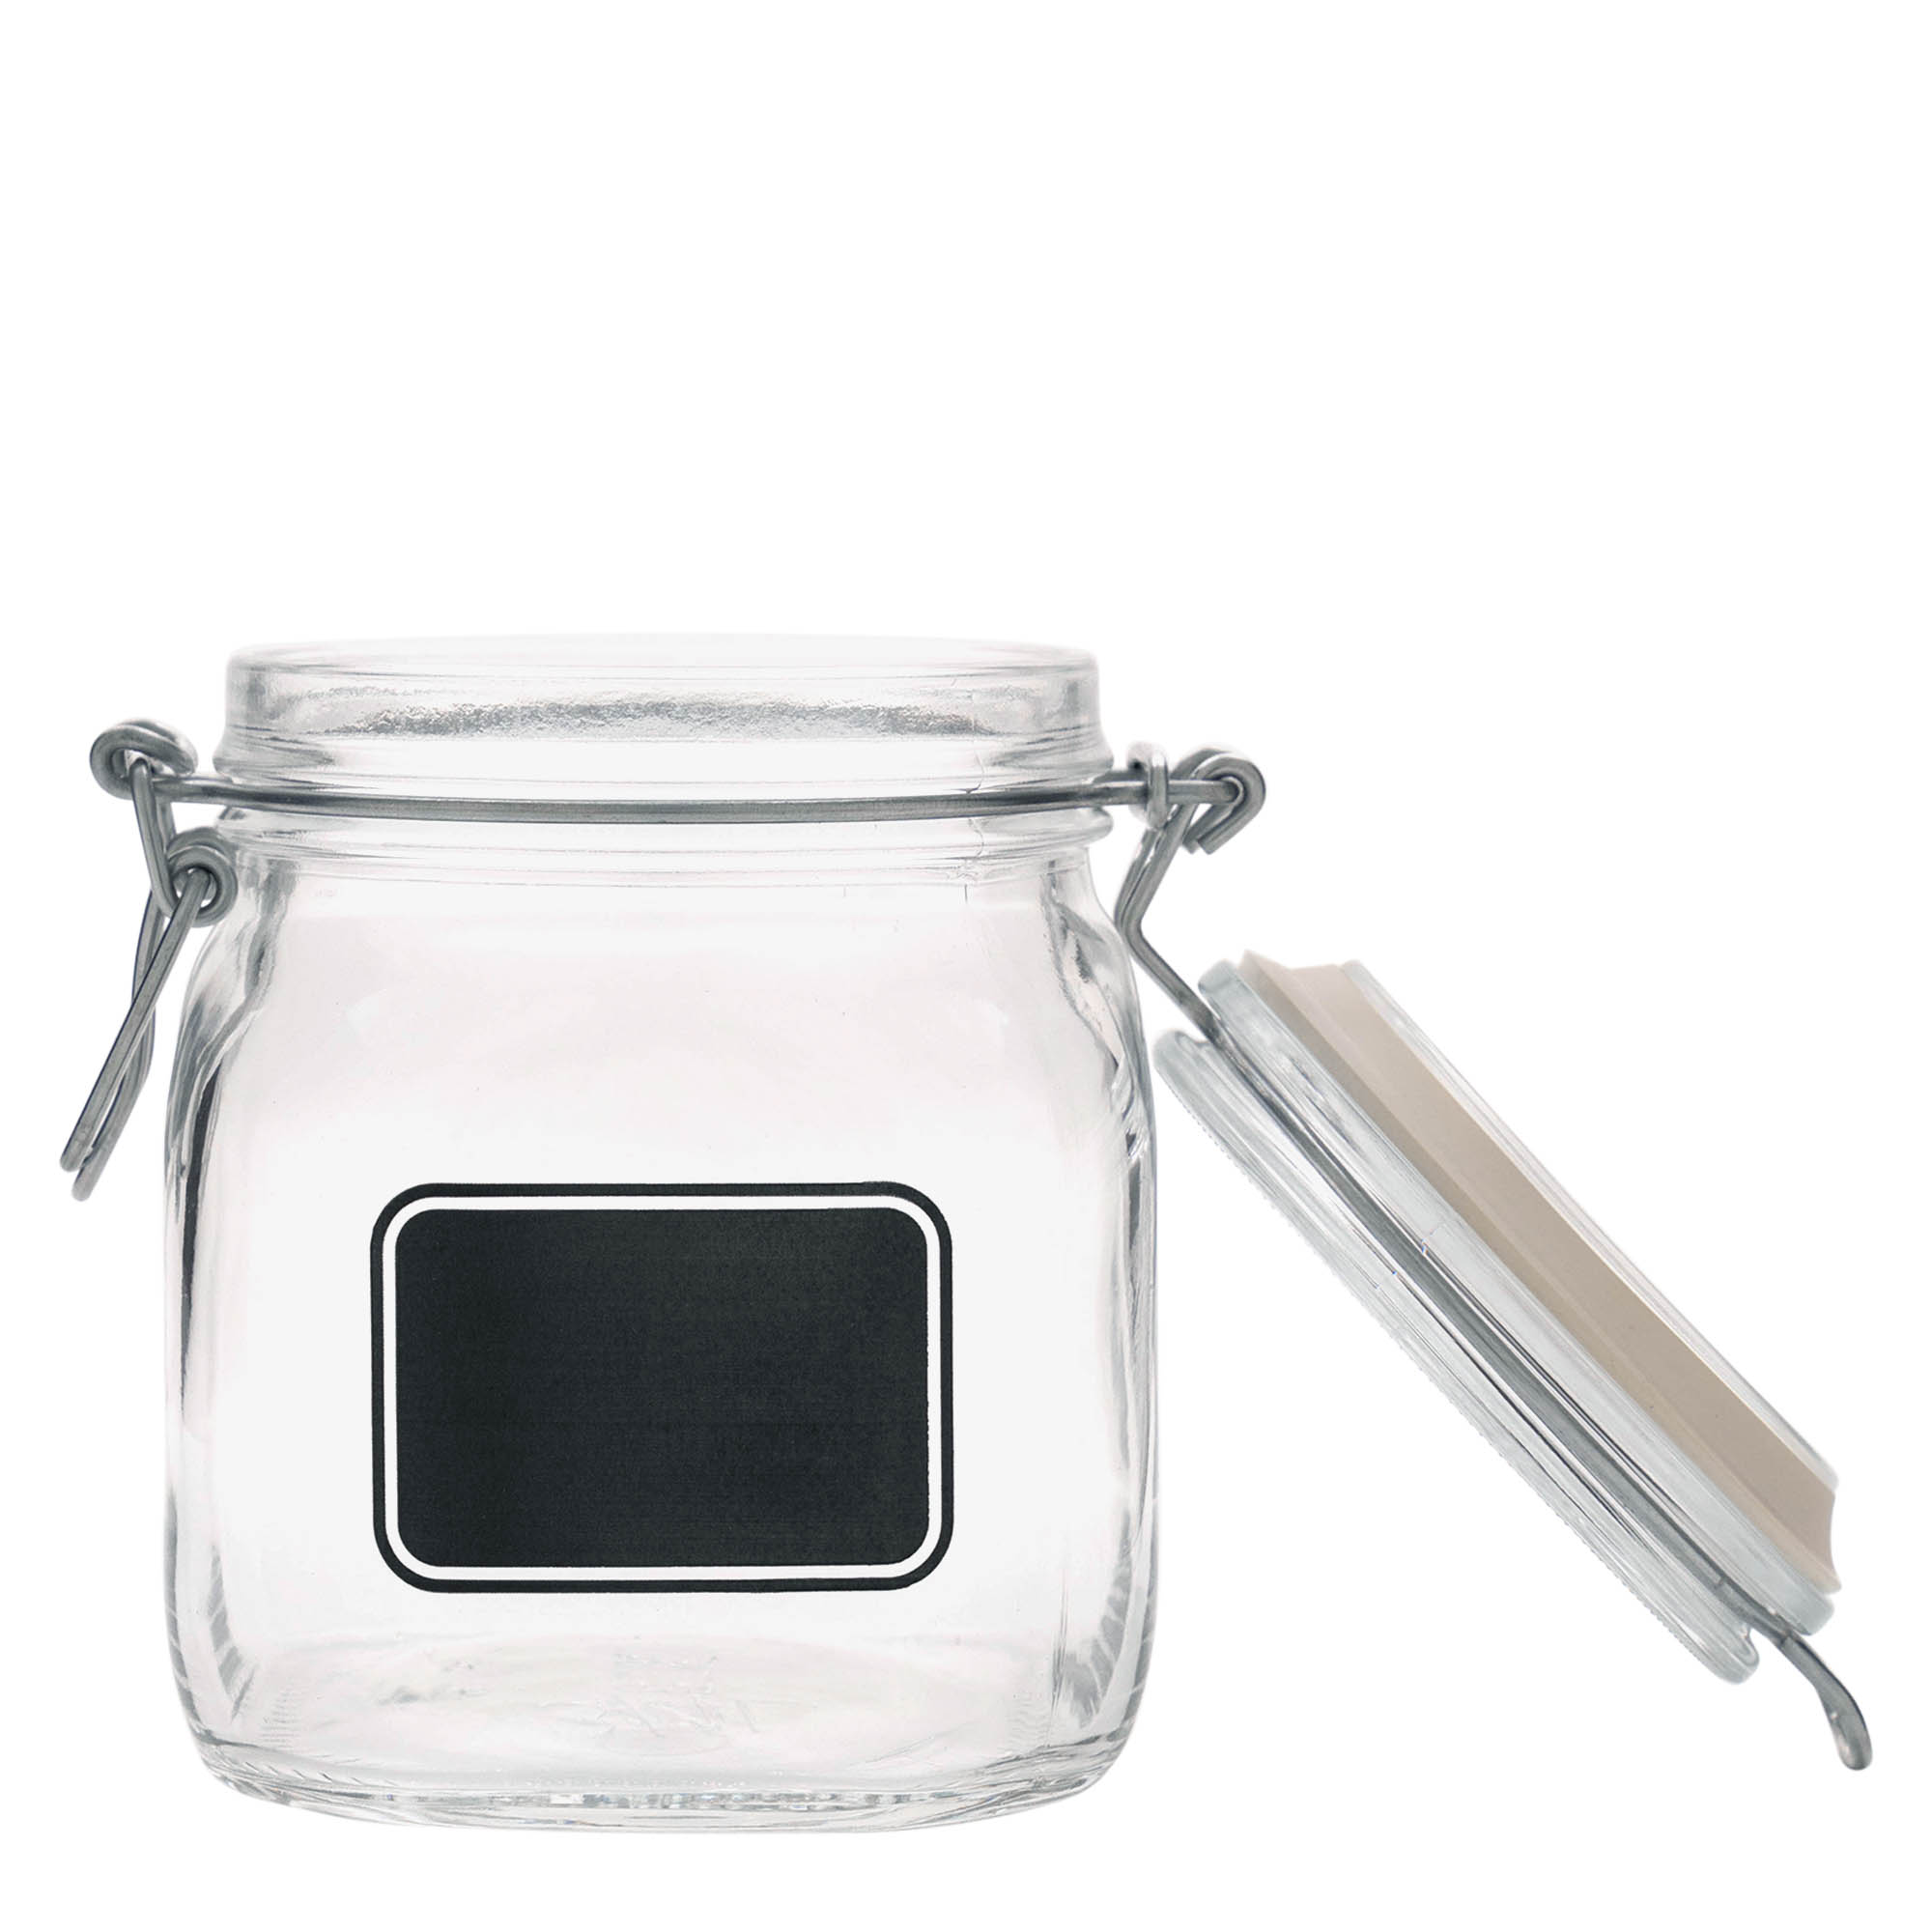 750 ml-es fémcsatos üveg 'Fido', motívum: Címkemező, négyzet alakú, szájnyílás: fémcsatos zár